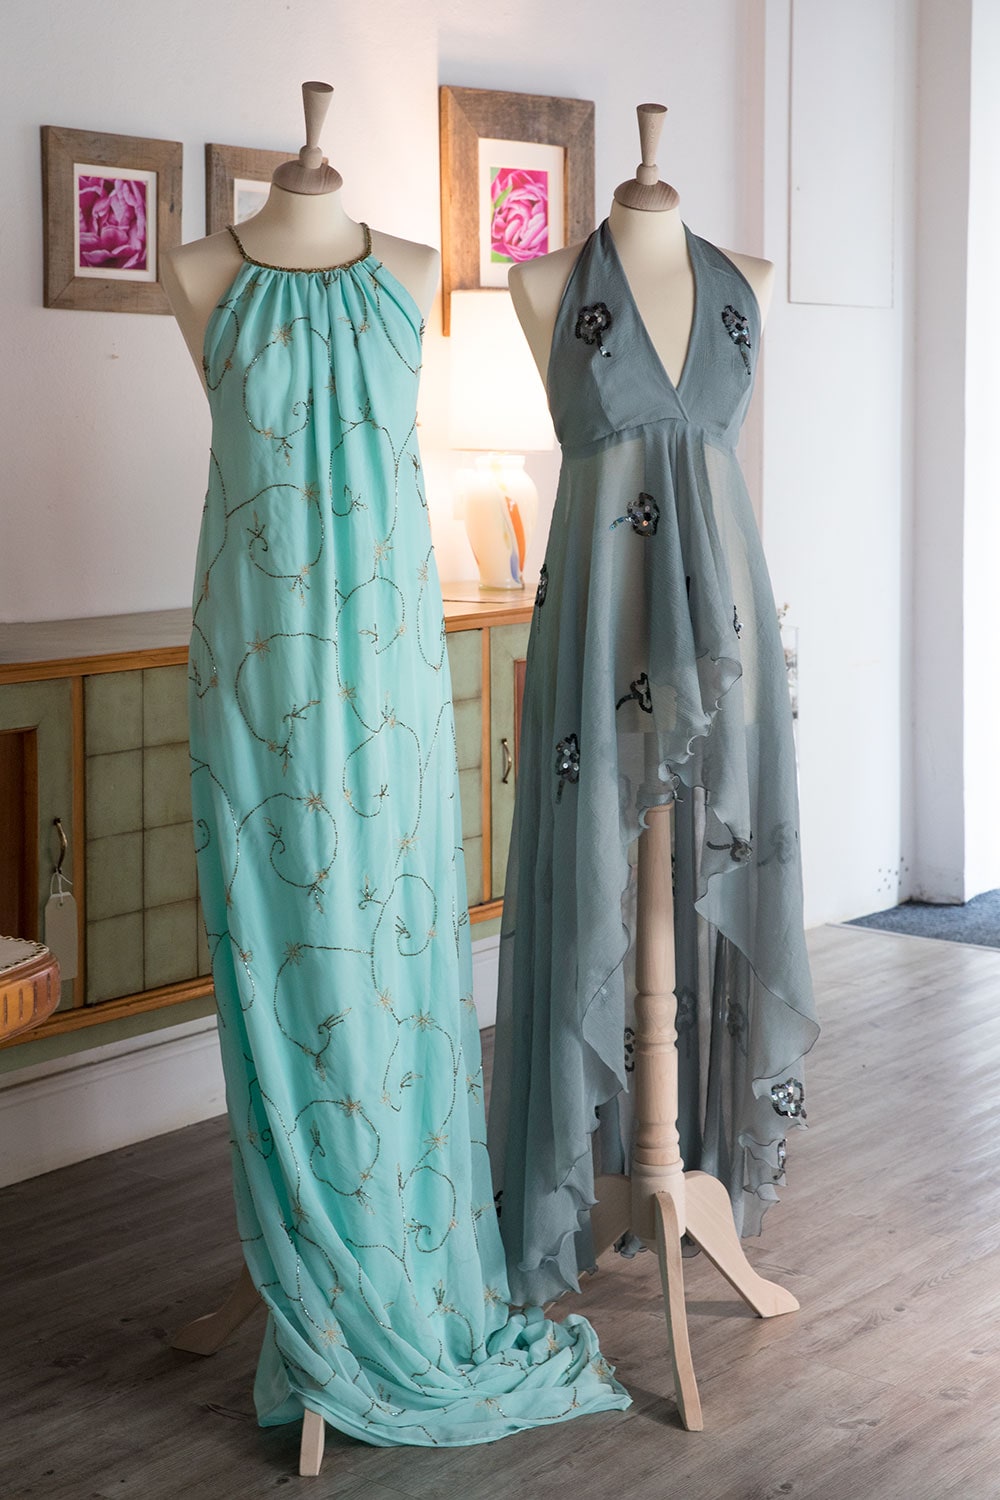 アレッサンドラさんに憧れ、娘たちもファッションの道へ。姉マルティーナさんはデザイナー、妹キャラさんはアート関係や運営を担当。このドレスはマルティーナさんデザイン。最高級シルクを職人の手縫いで仕上げた一点物。1,200ユーロ(右)、900ユーロ(左)。